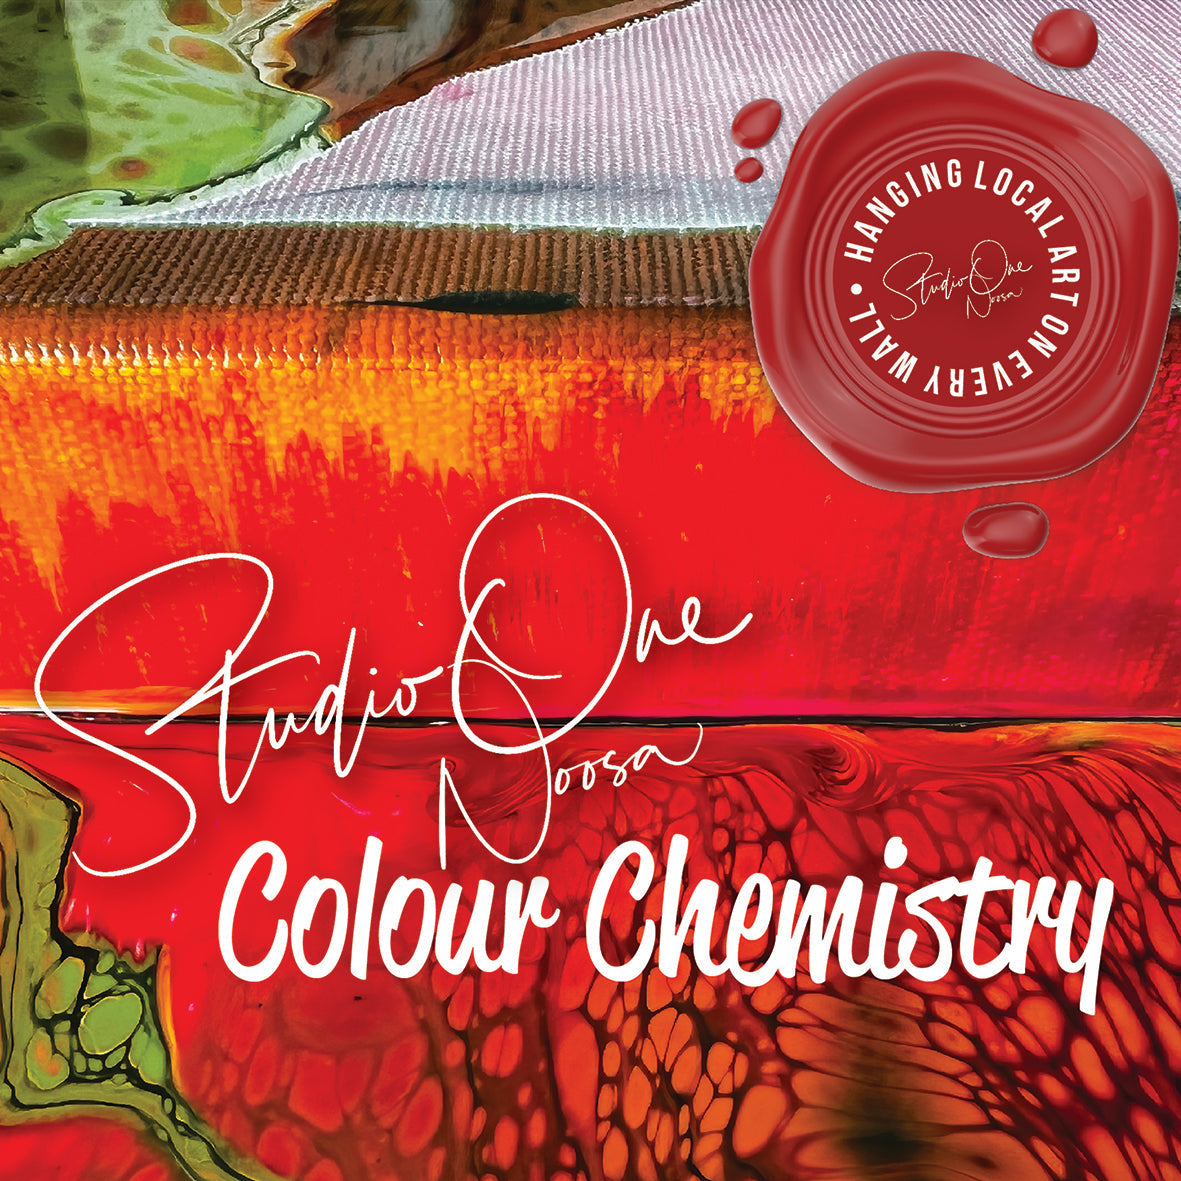 1st March 24 - Sip & Pour  - Colour Chemistry Workshop - 5:30PM to 8:00PM